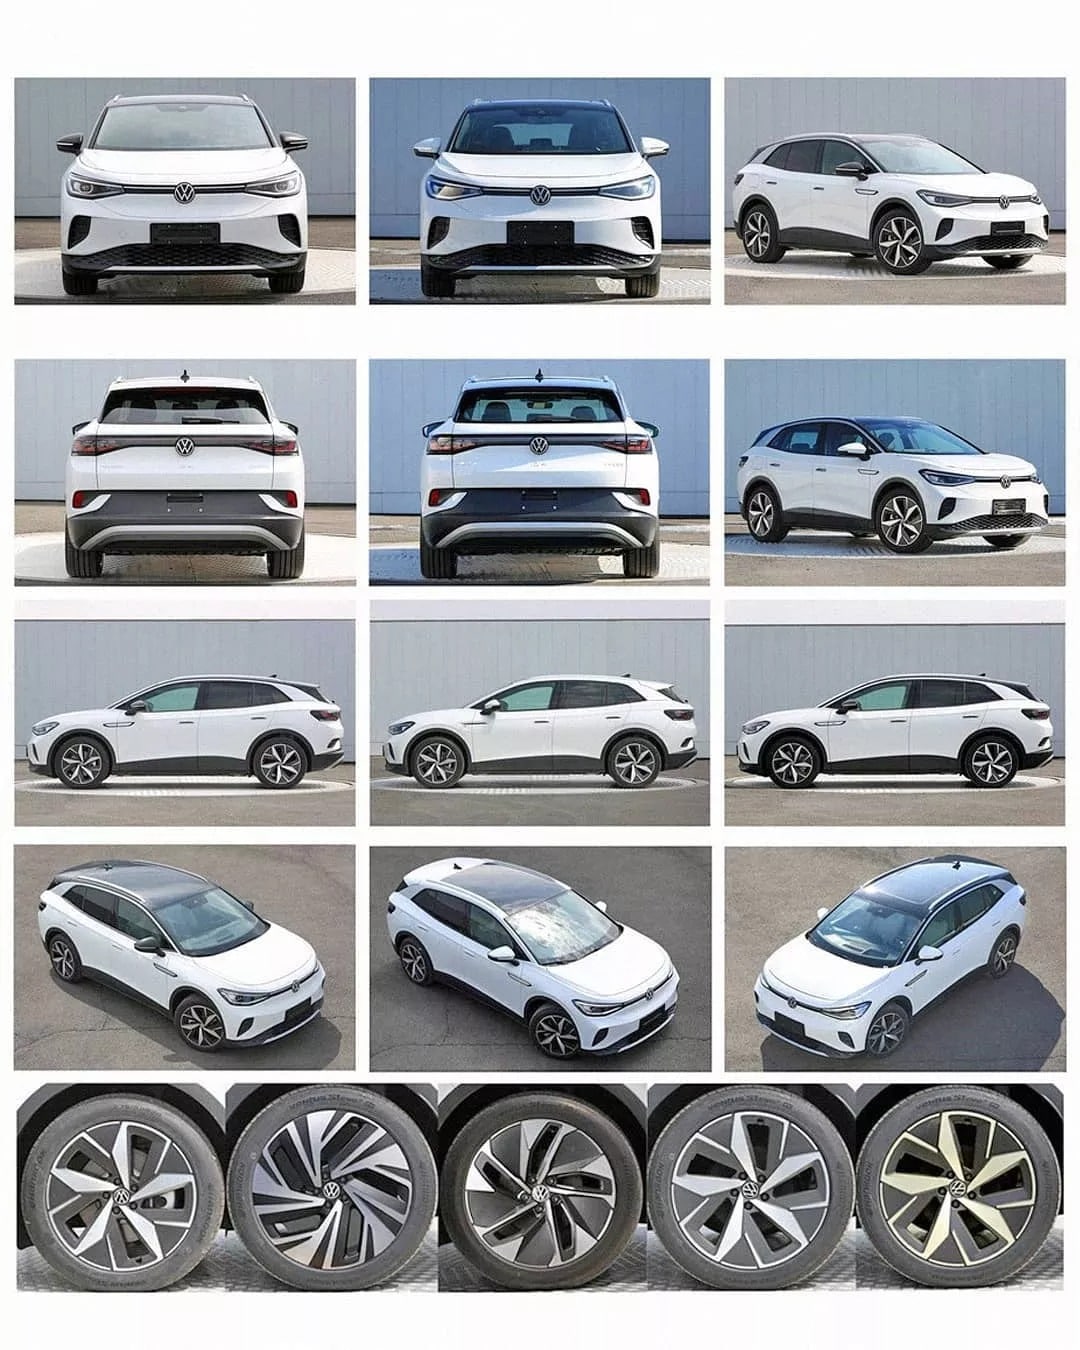 Volkswagen'in elektrikli SUV aracı ID 4 dış tasarımını gösteren fotoğraflar